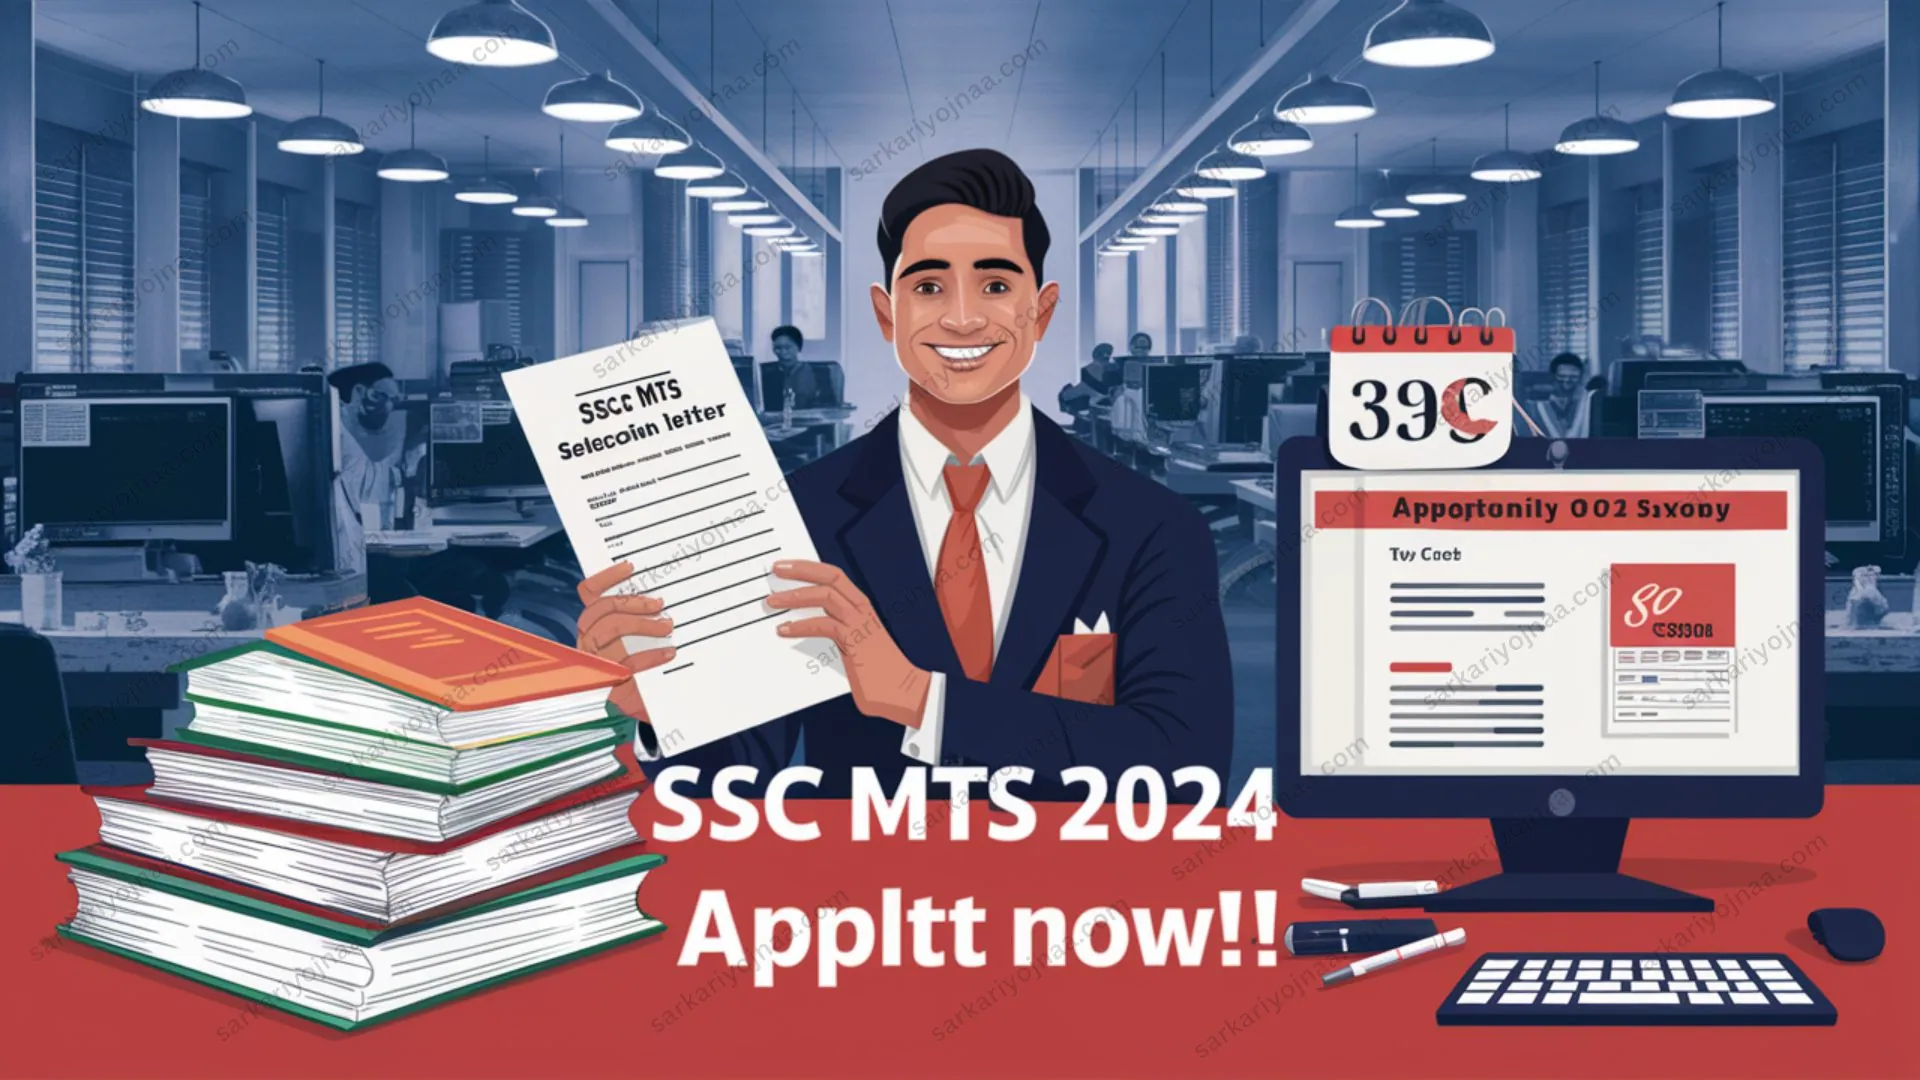 SSC MTS Recruitment Apply Online 2024 : सिर्फ 10वीं पास करें आवेदन, जानें योग्यता, सिलेबस, पात्रता, डॉक्यूमेंट,